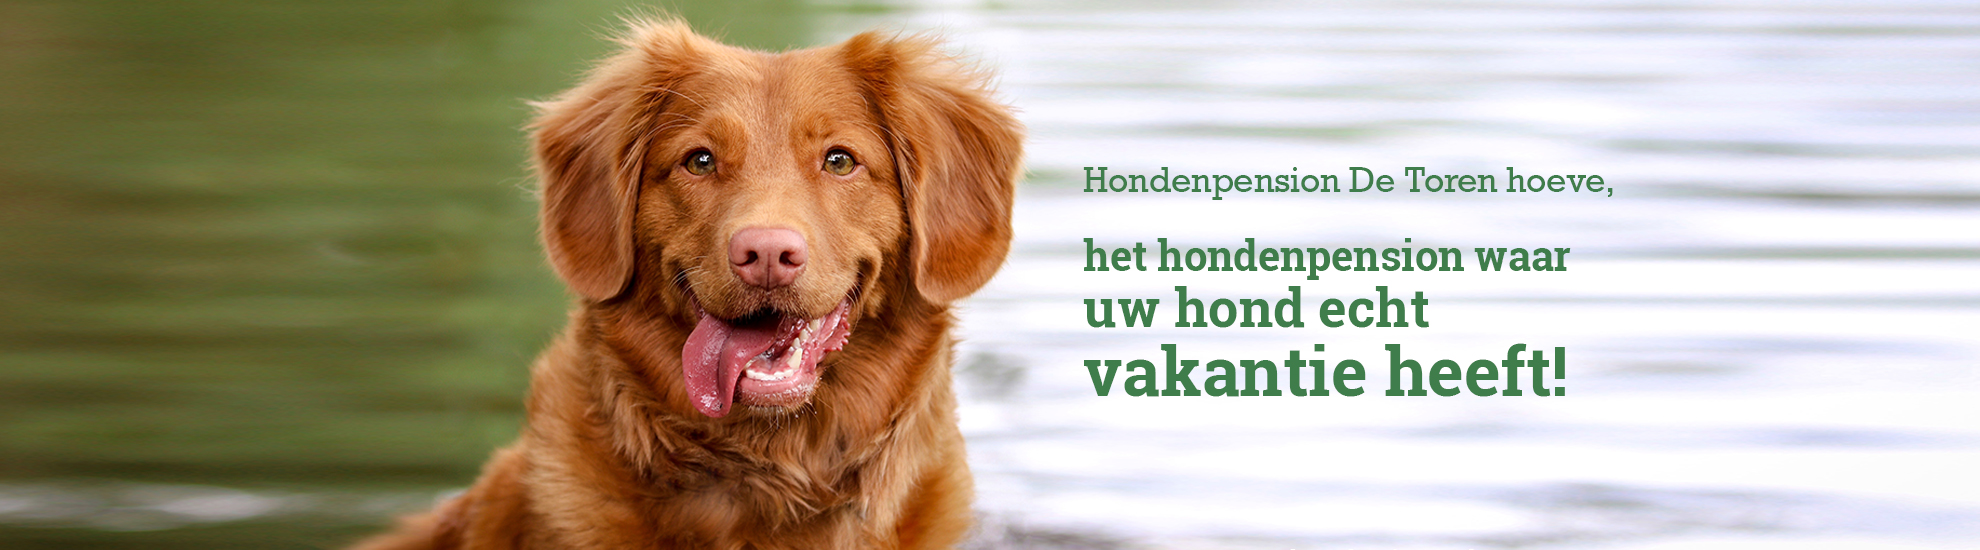 alledaags Additief Vervagen Hondenpension De Toren hoeve in Biddinghuizen, Flevoland